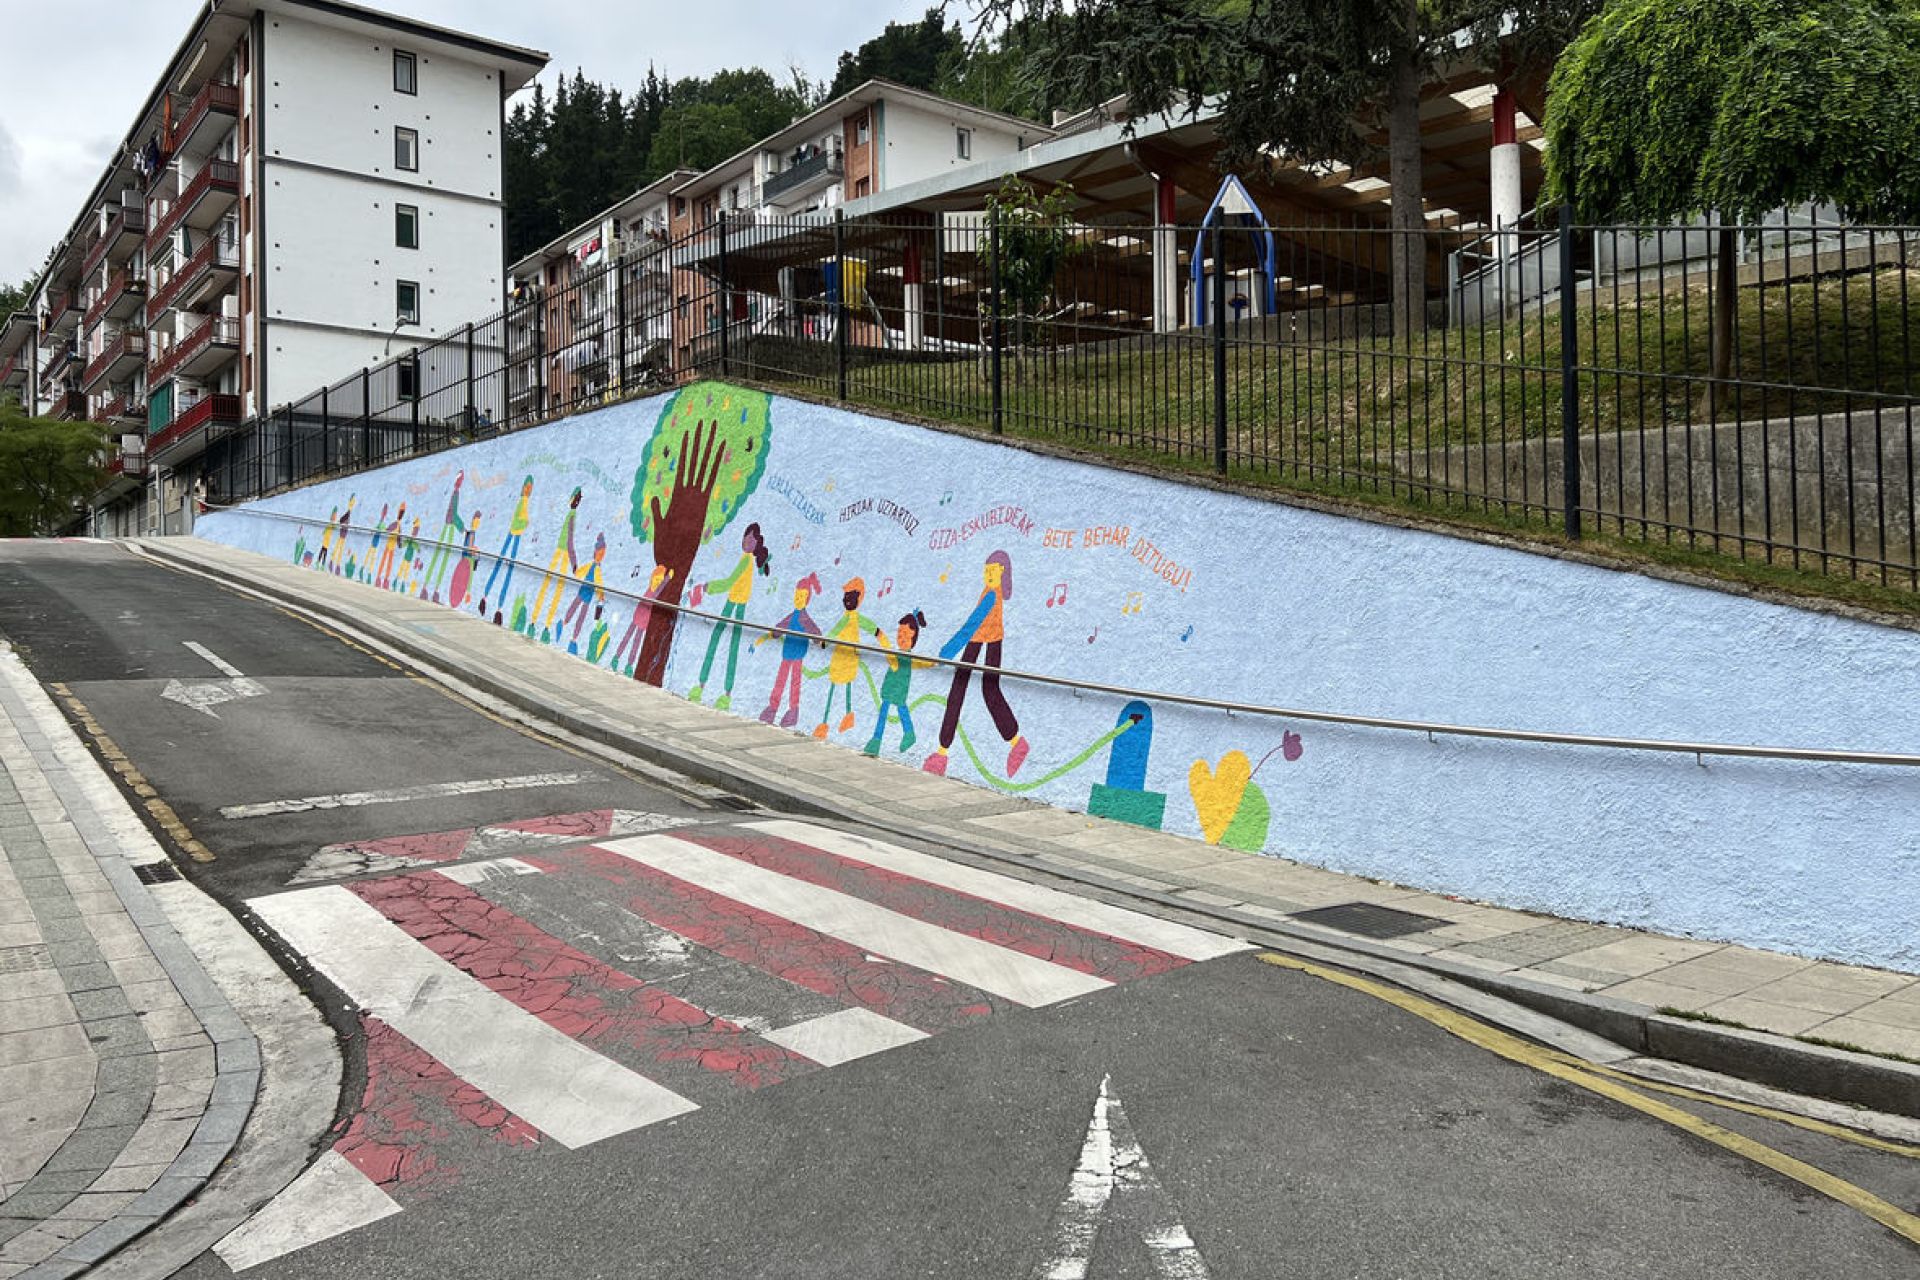 Los derechos humanos, el arte y el euskera unidos en el mural que adorna el colegio Murumendi